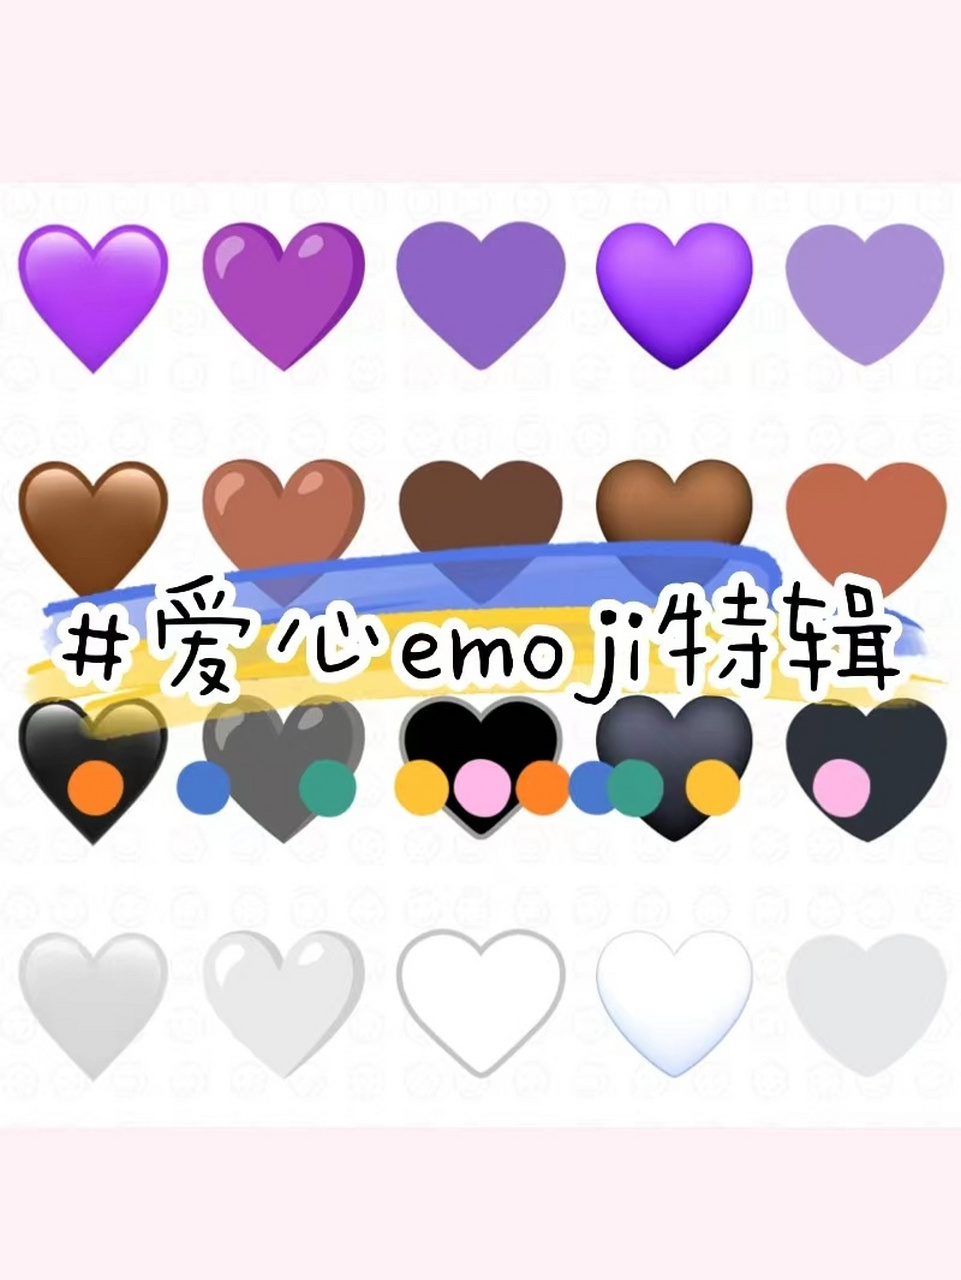 在社交媒体中,紫心emoji则更多地用于紫心勋章或0202防弹少年团的